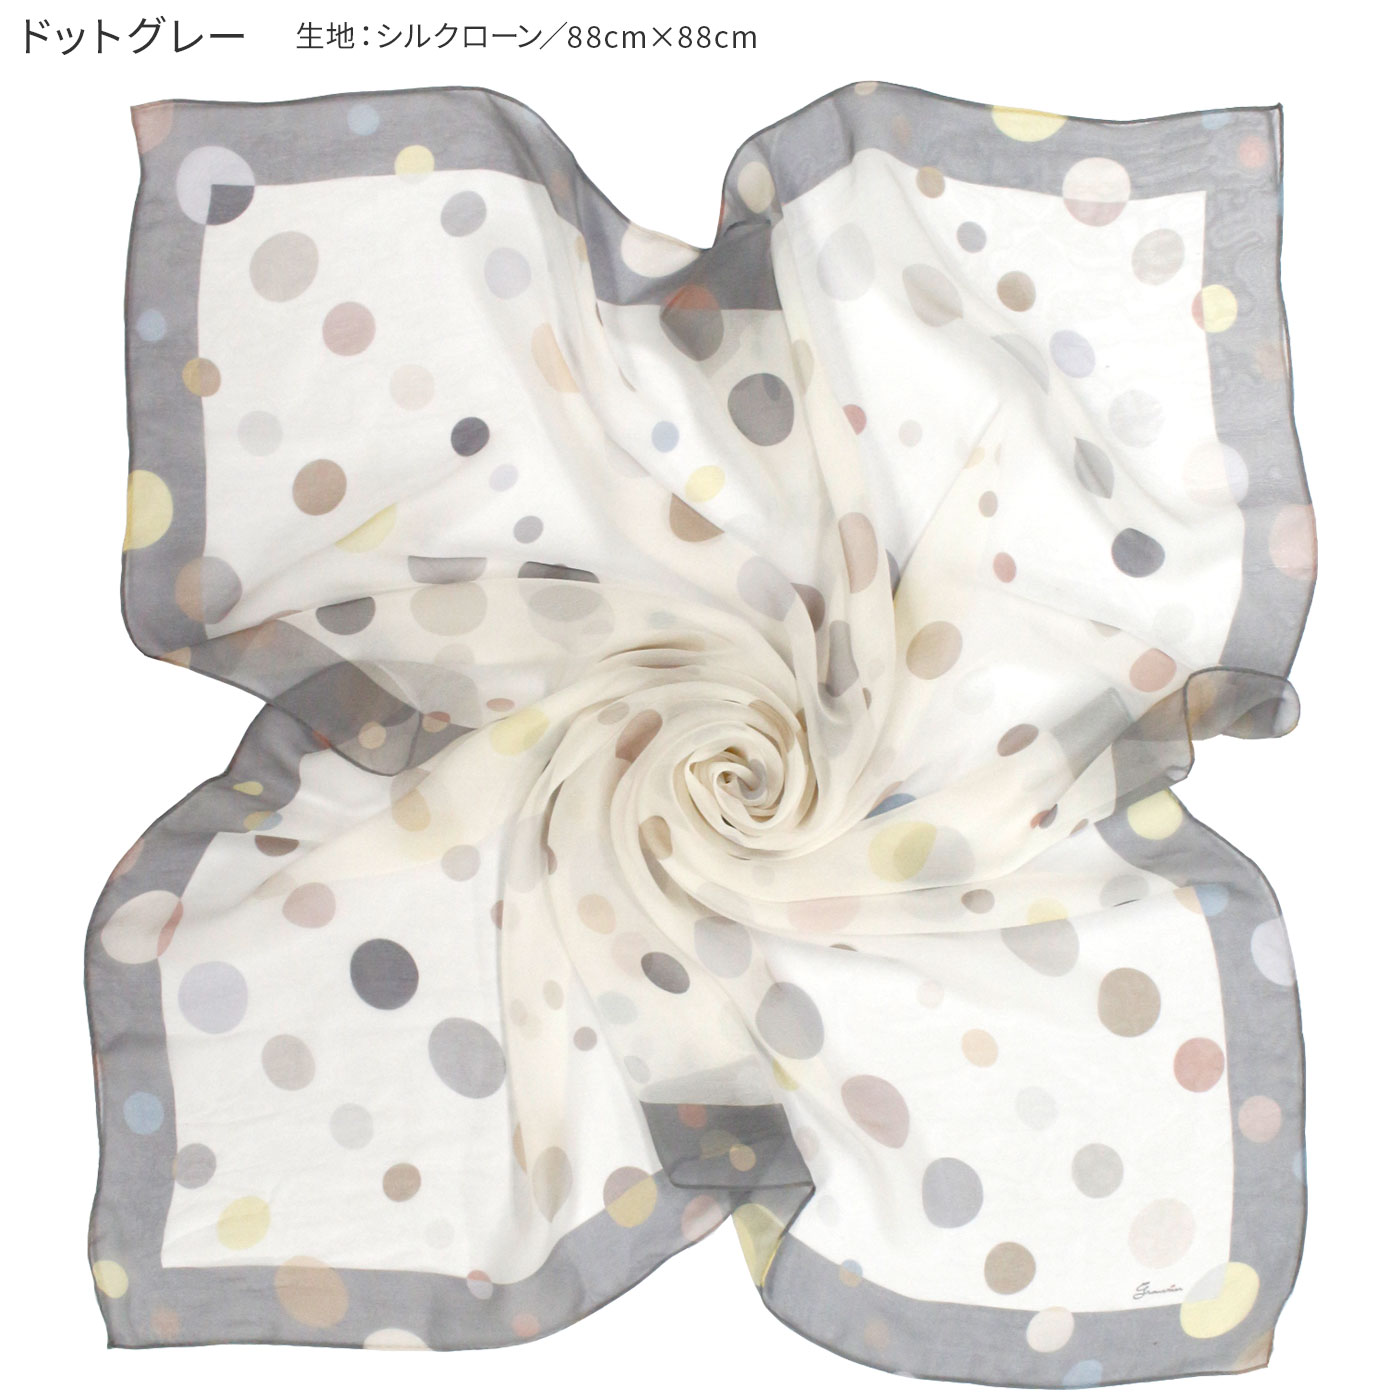 楽天市場柄から選べる年秋 スカーフ シルク 日本製